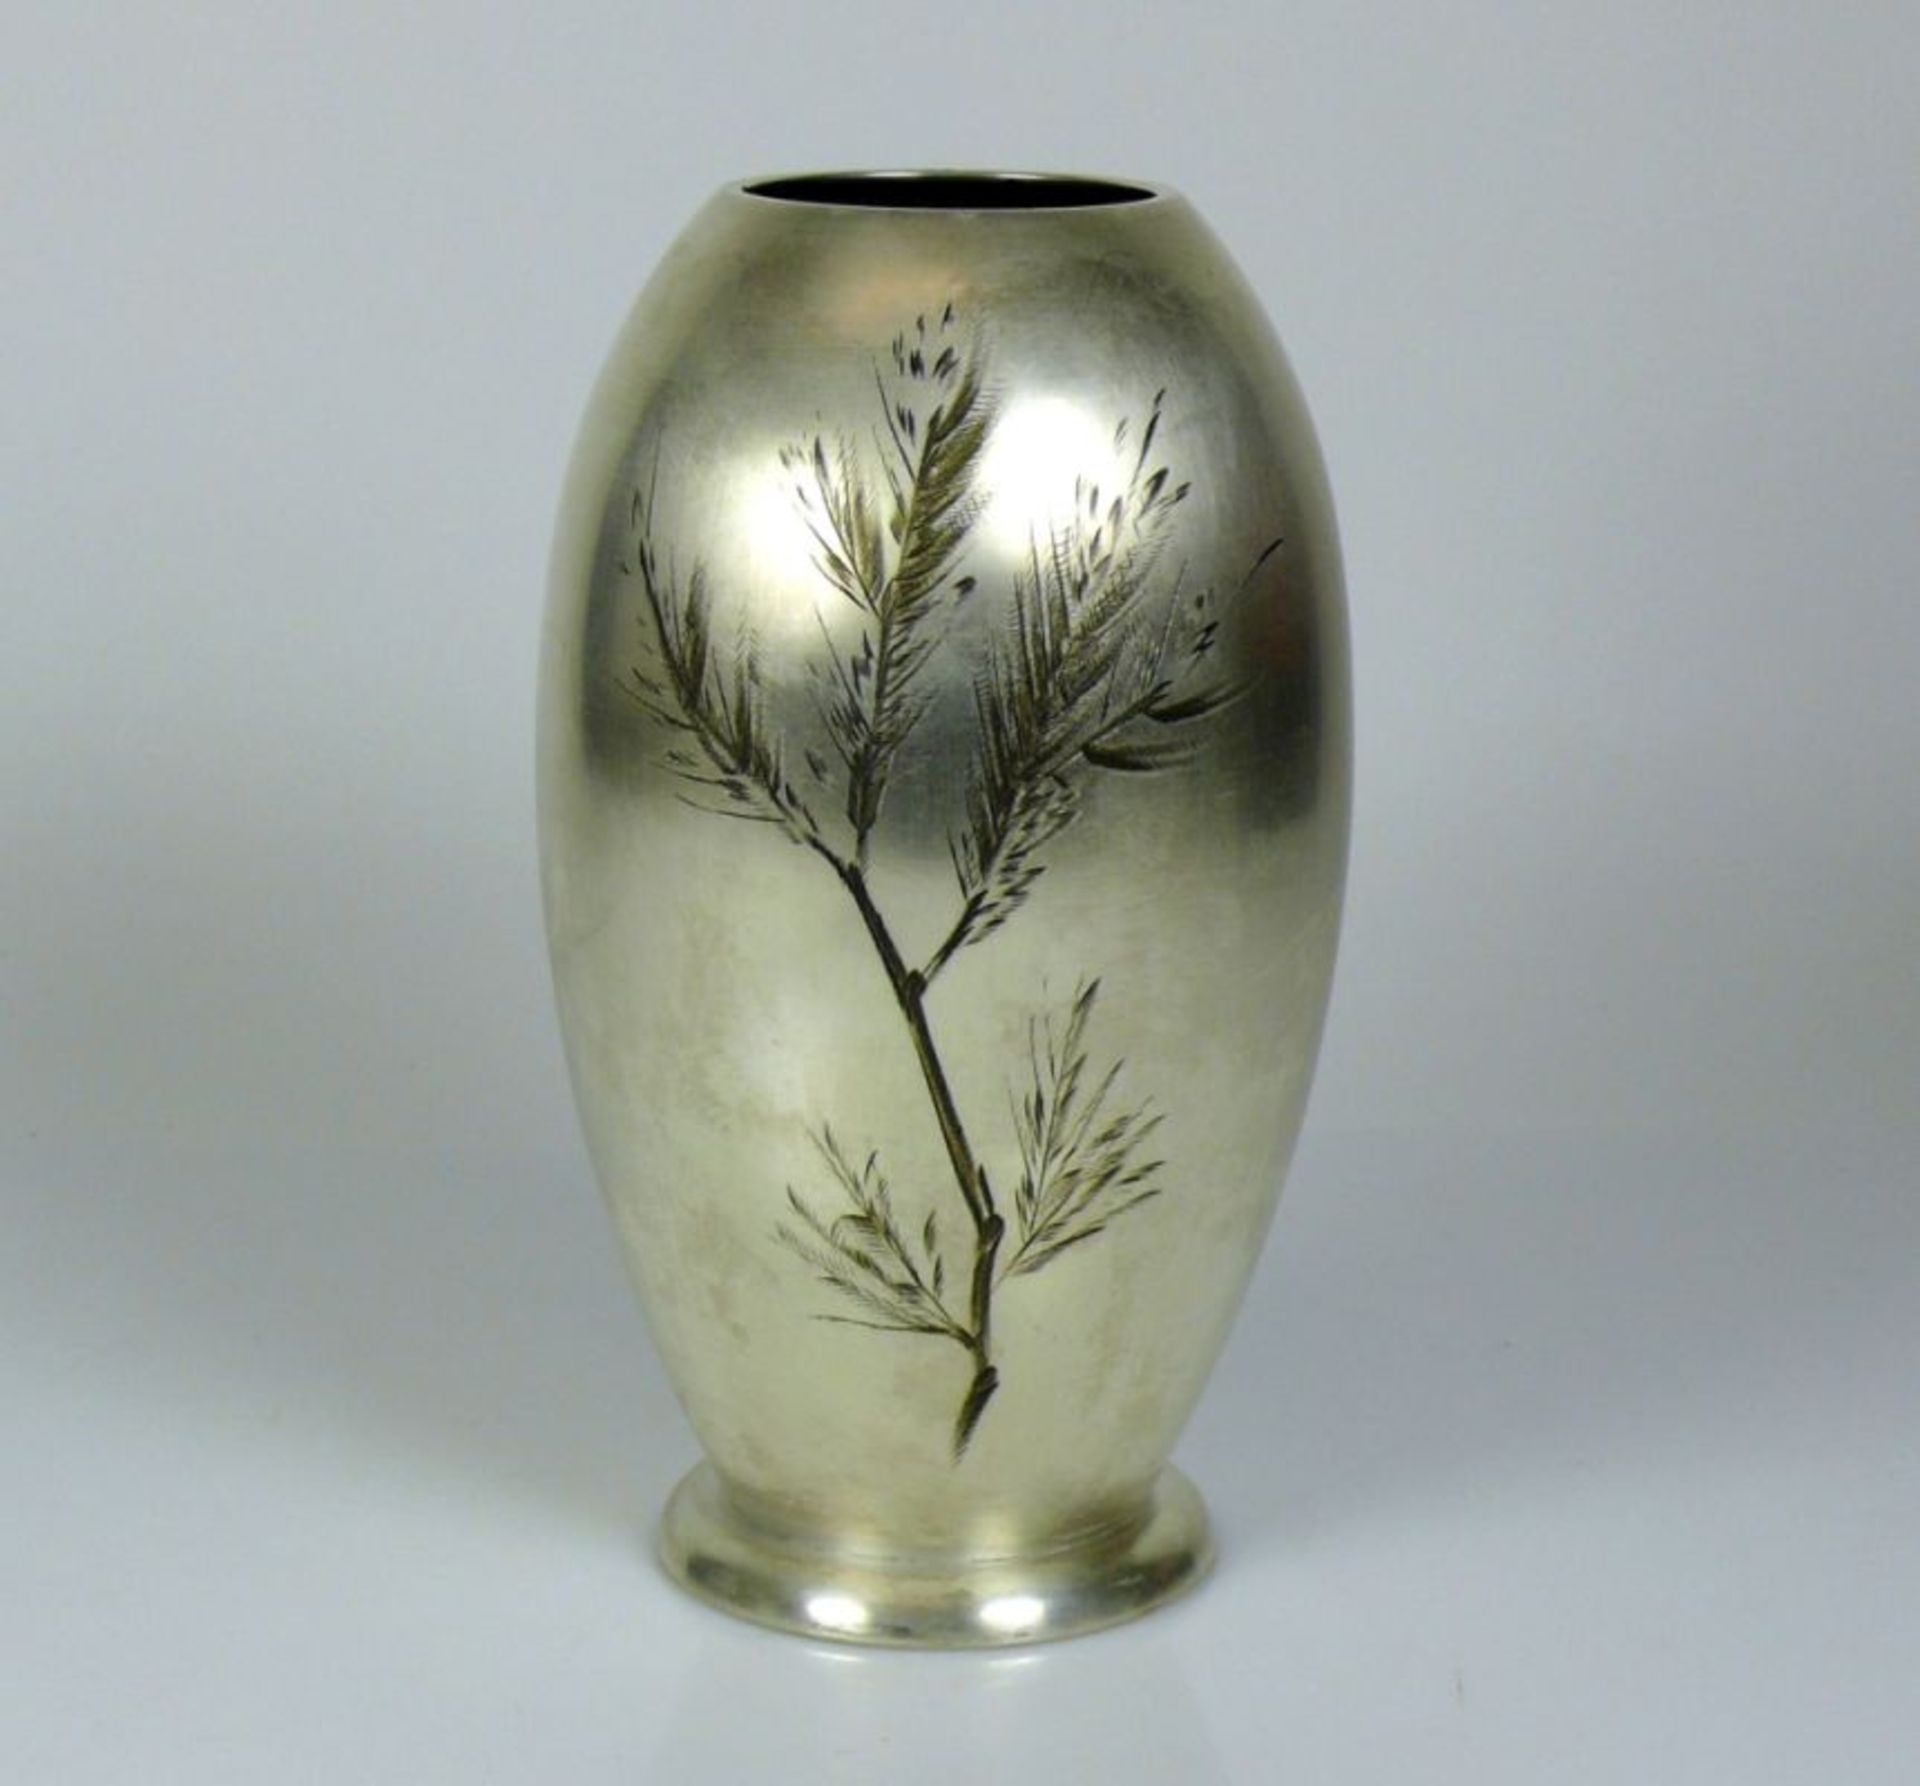 IKORA-Vase (WMF)silberfarben mit Strauchdekor; H: 25 cm